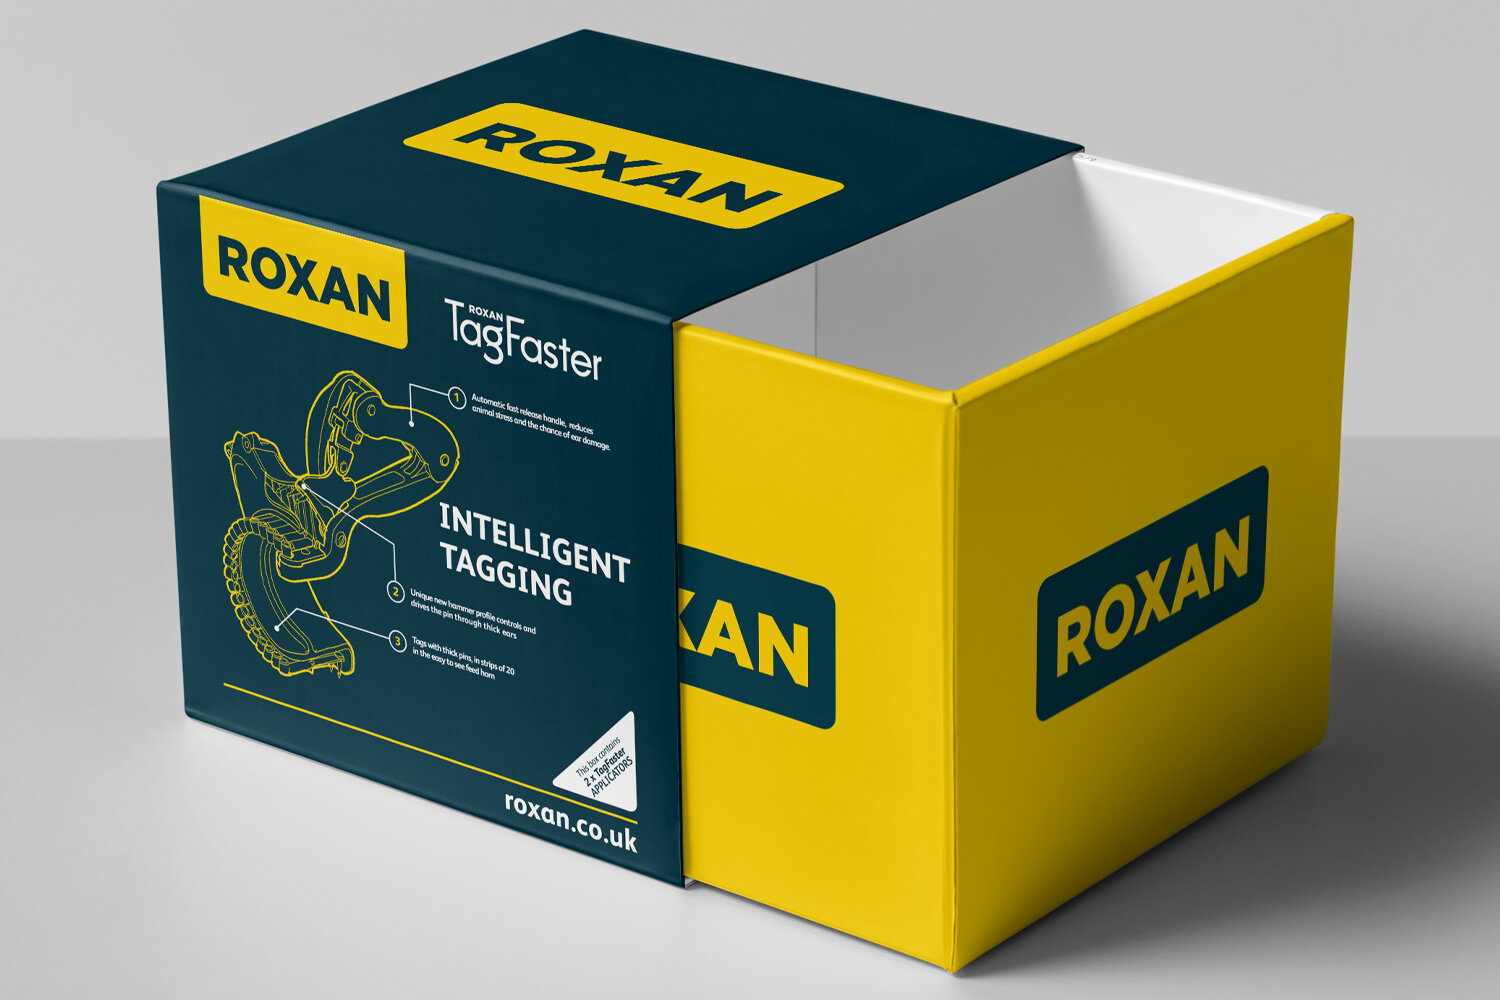 Roxan Box2.jpg